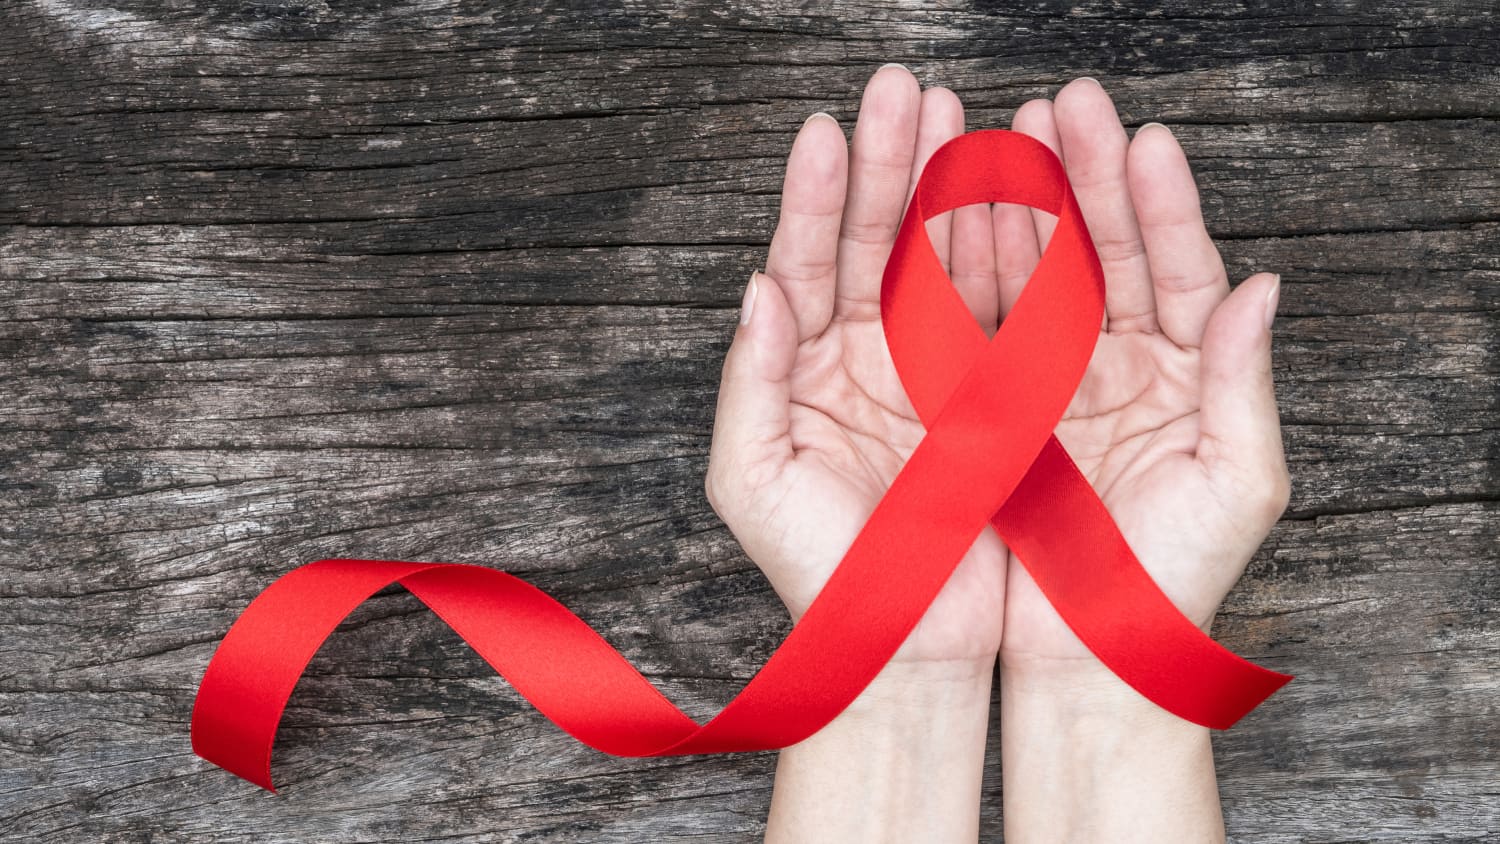 SVETSKI DAN BORBE PROTIV HIV-A Podrška za ljude koji se bore, stavimo tačku na nejednakosti